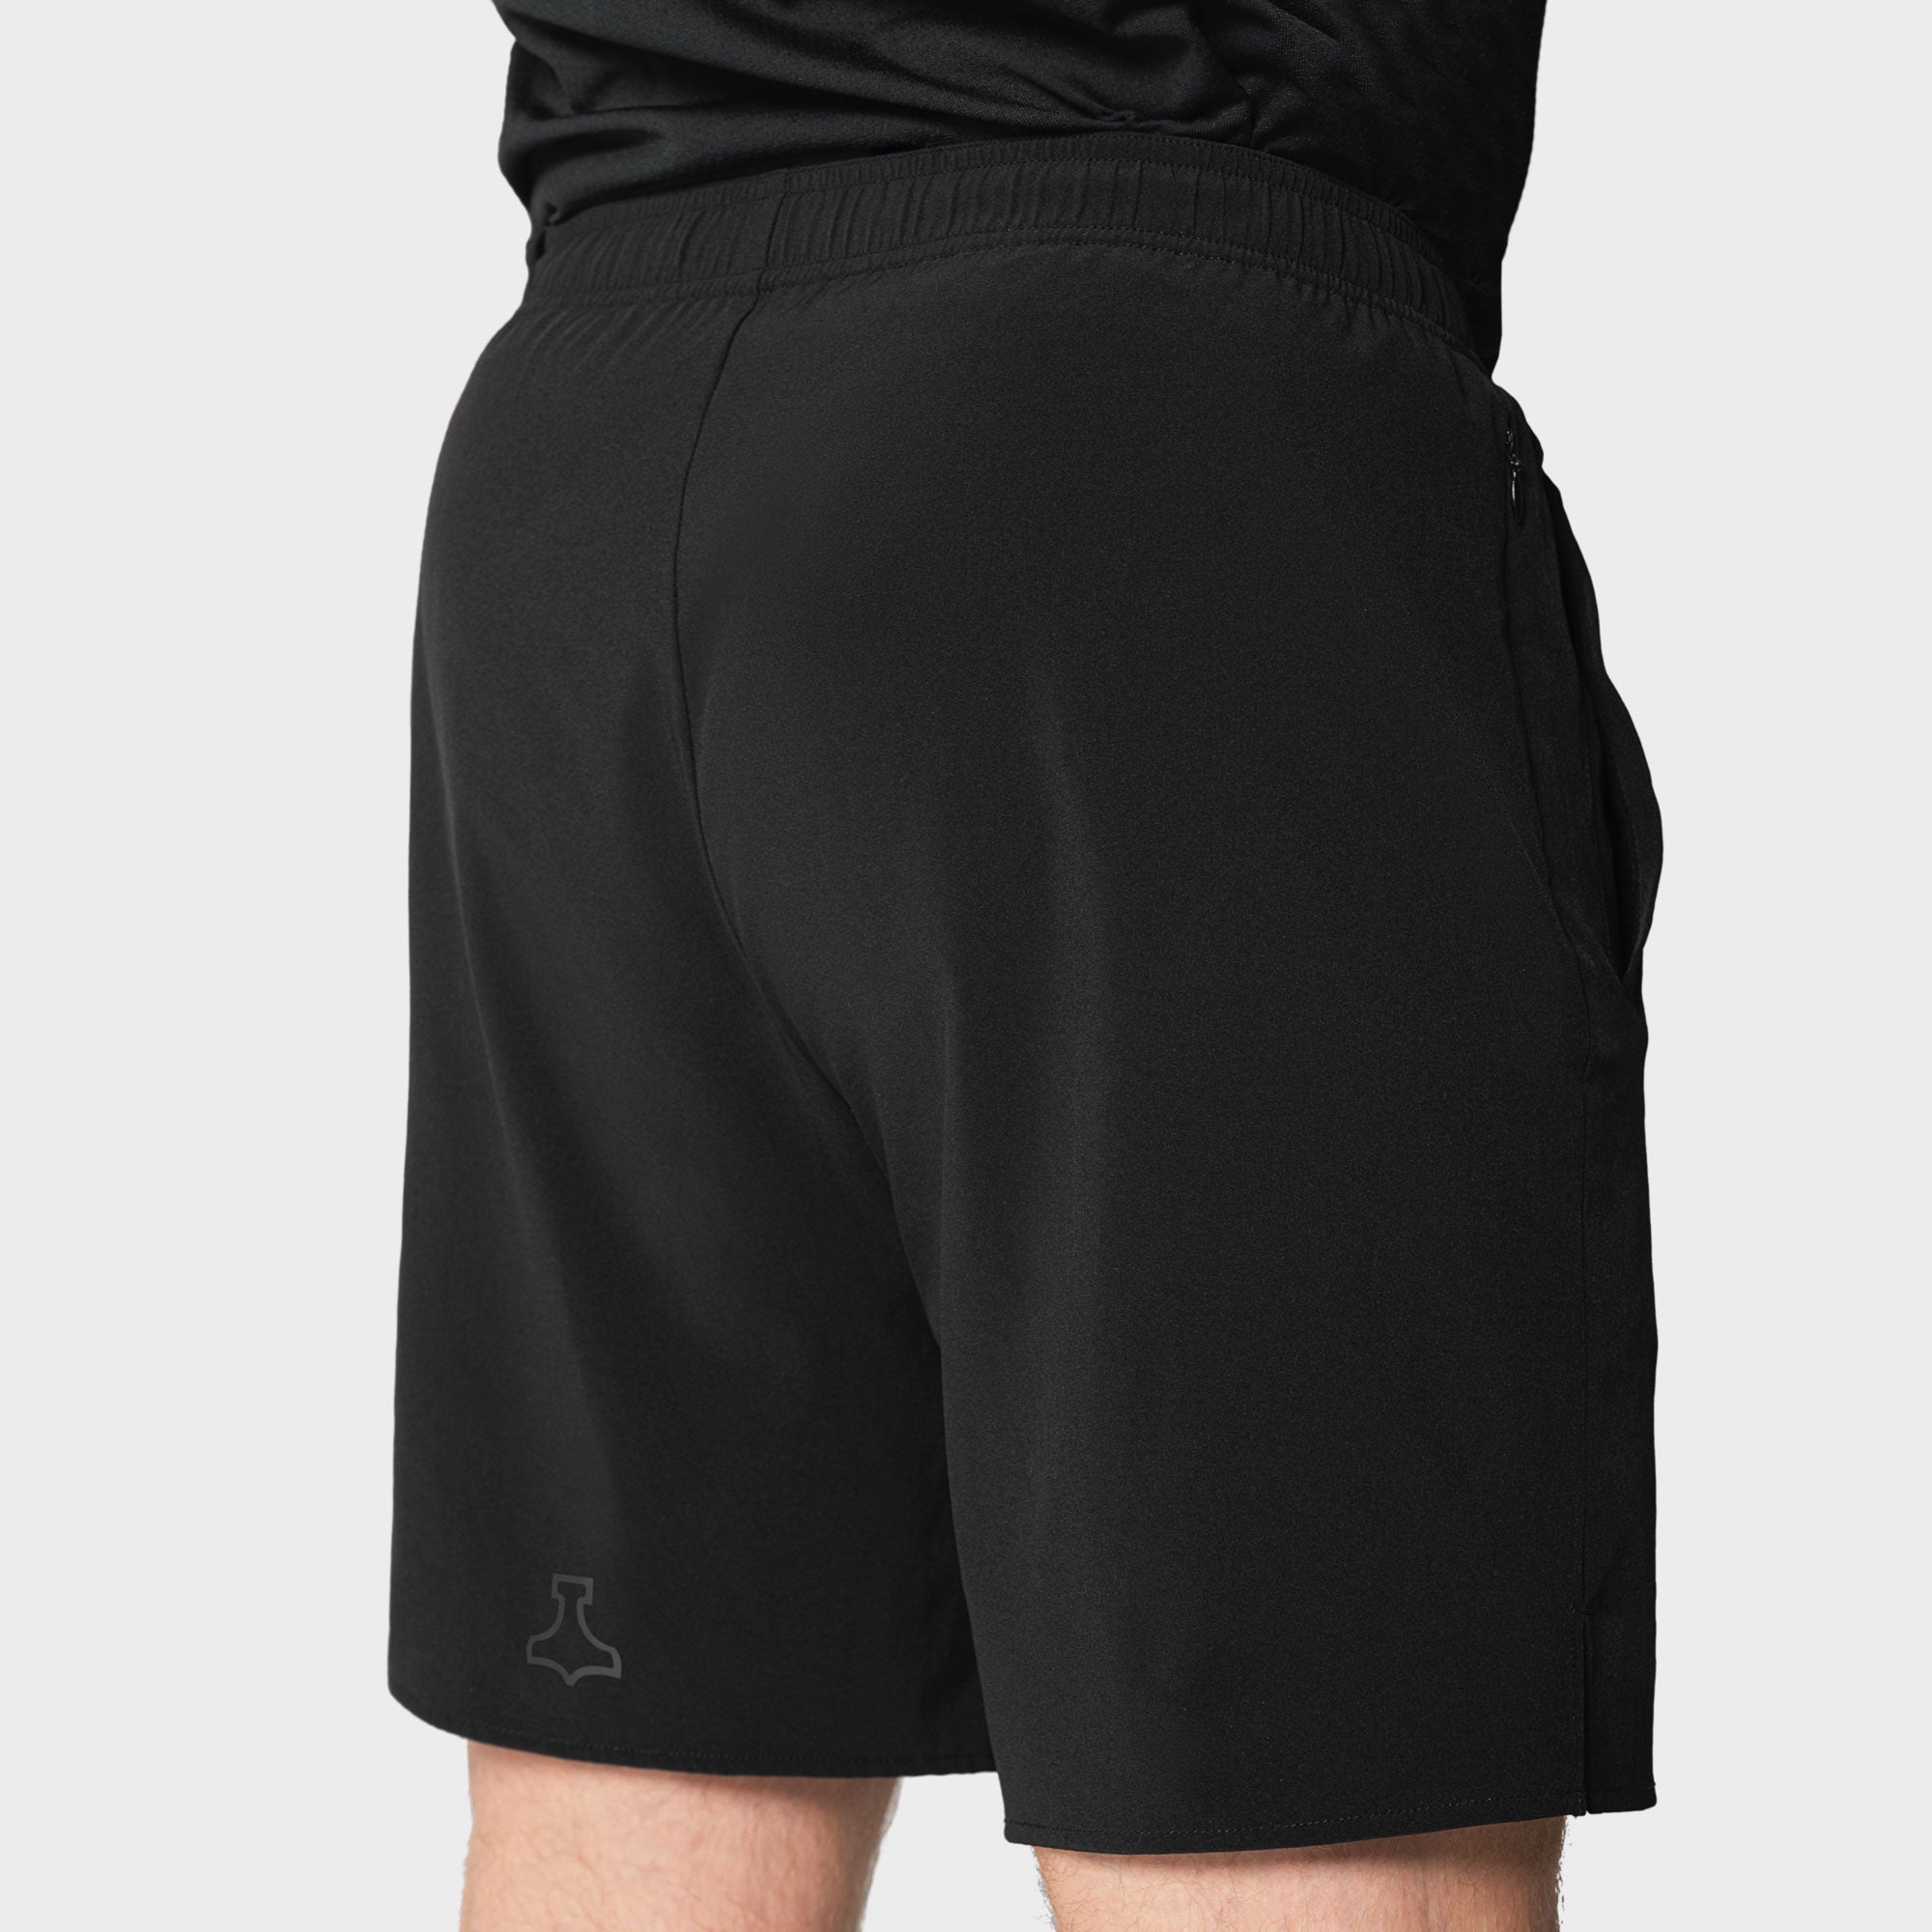 Liiteguard RE-LIITE SHORTS (MEN) Shorts BLACK